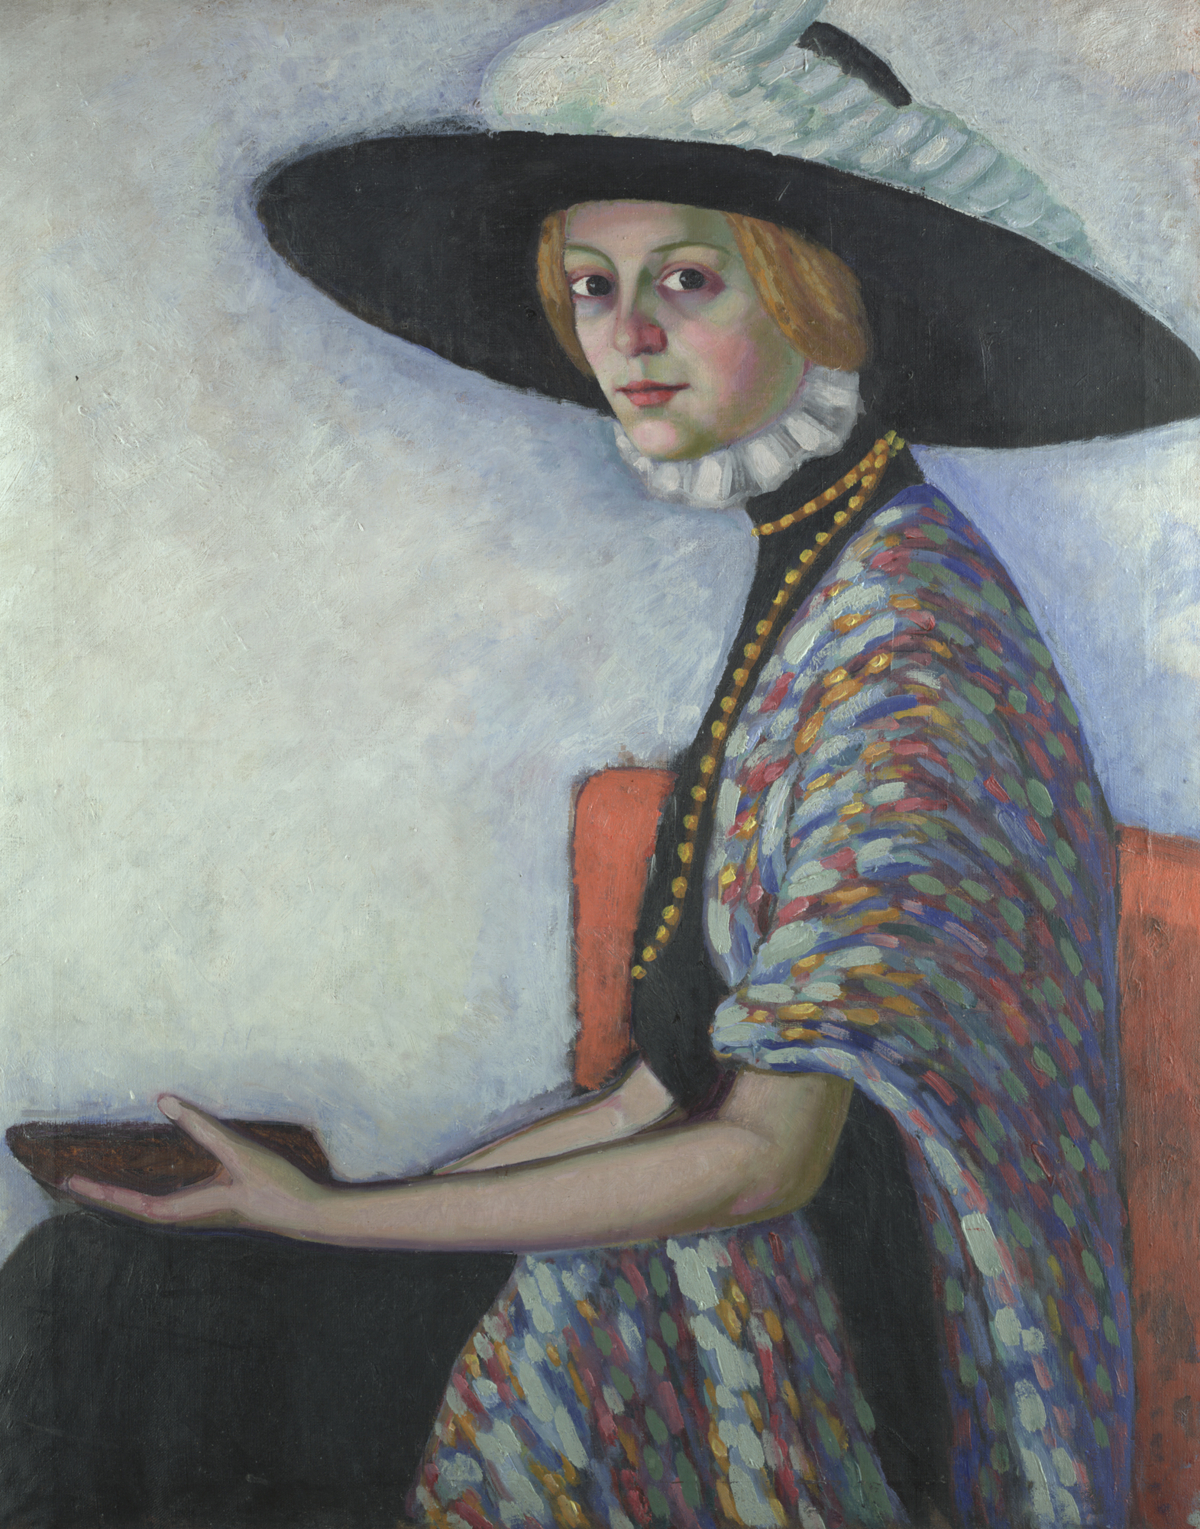 Konrad M&auml;gi, Portrett av Alide Asmus, 1912&ndash;1913, Tartu kunstmuseum.

